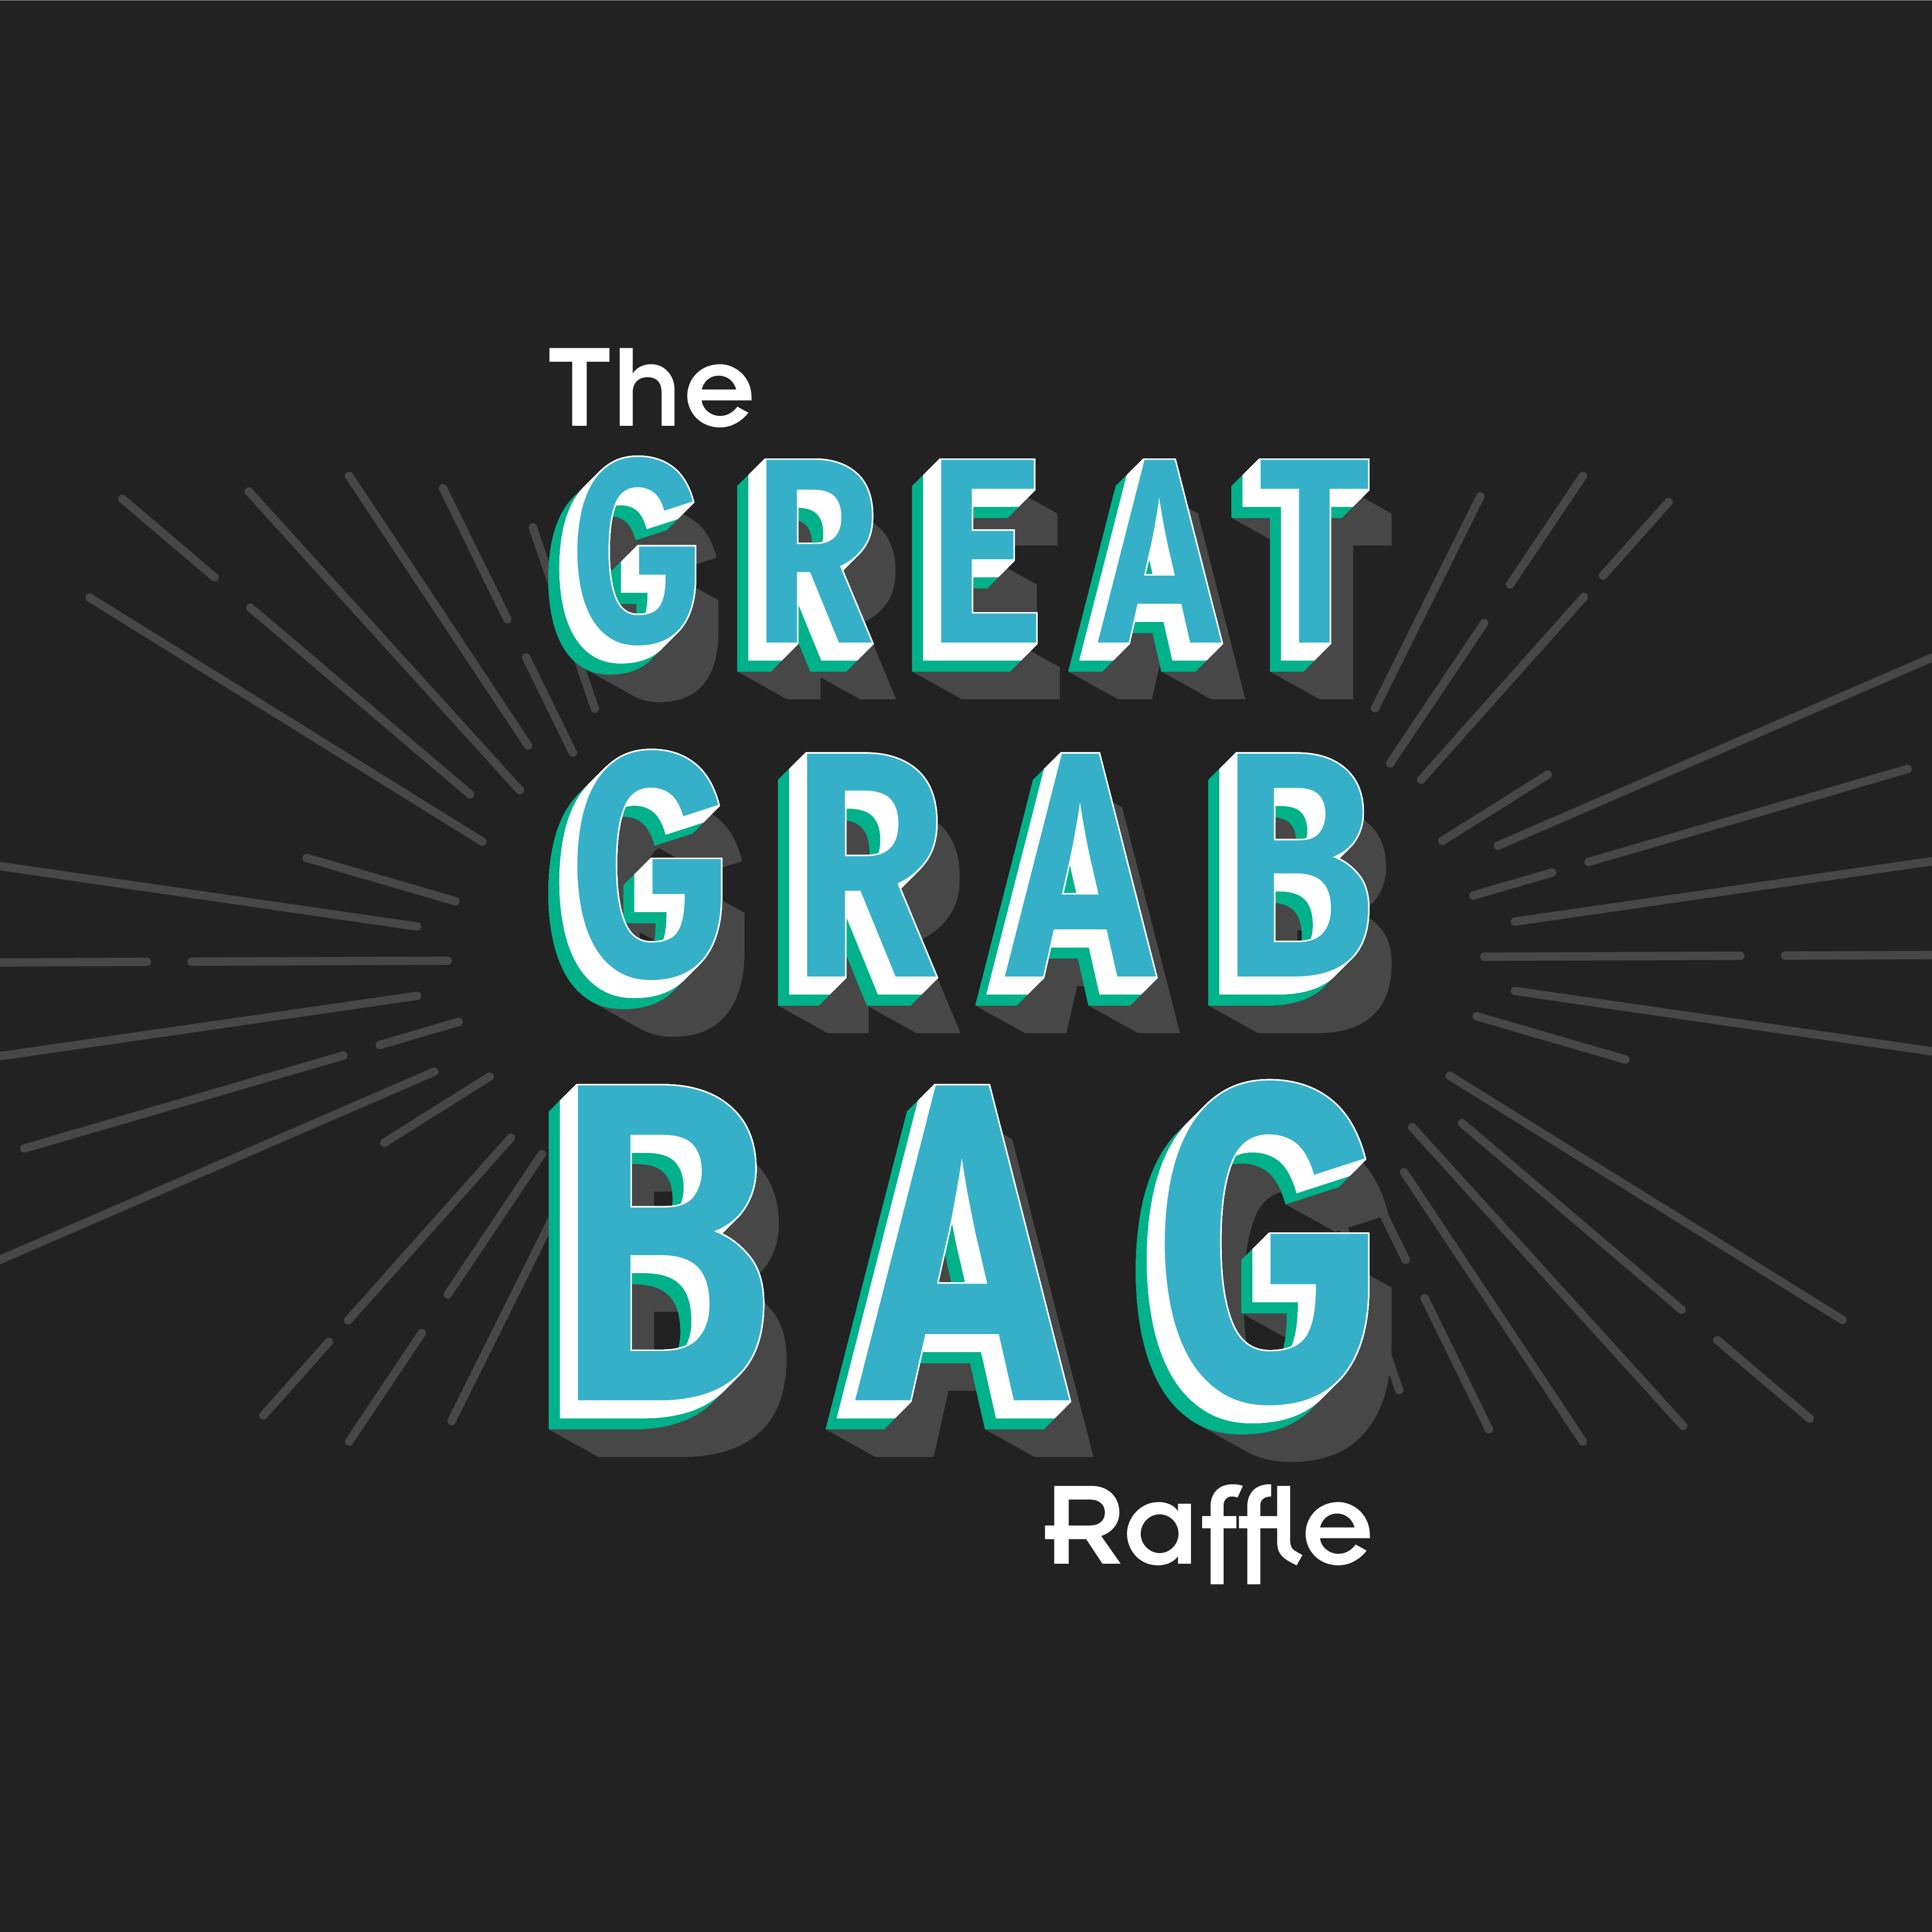 The Great Grab Bag Raffle